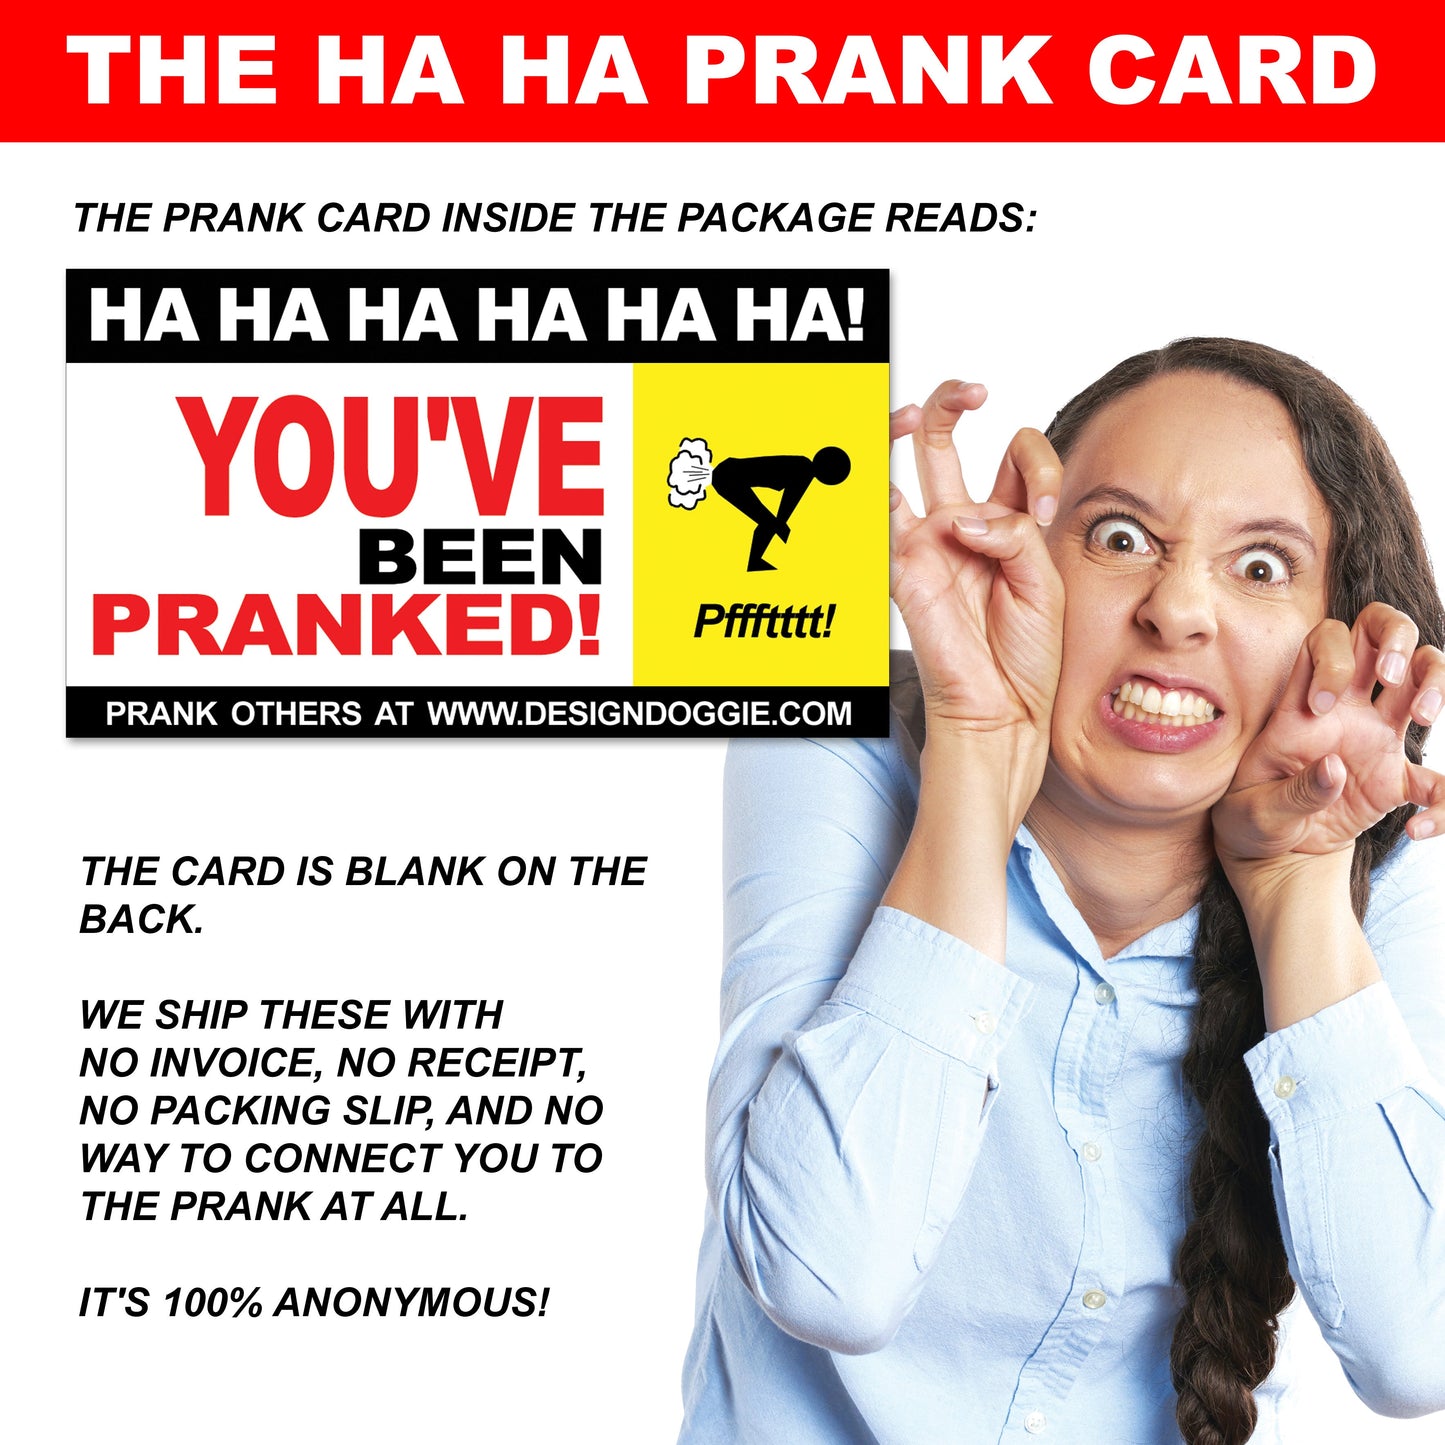 Five-Head Hider Prank Mail